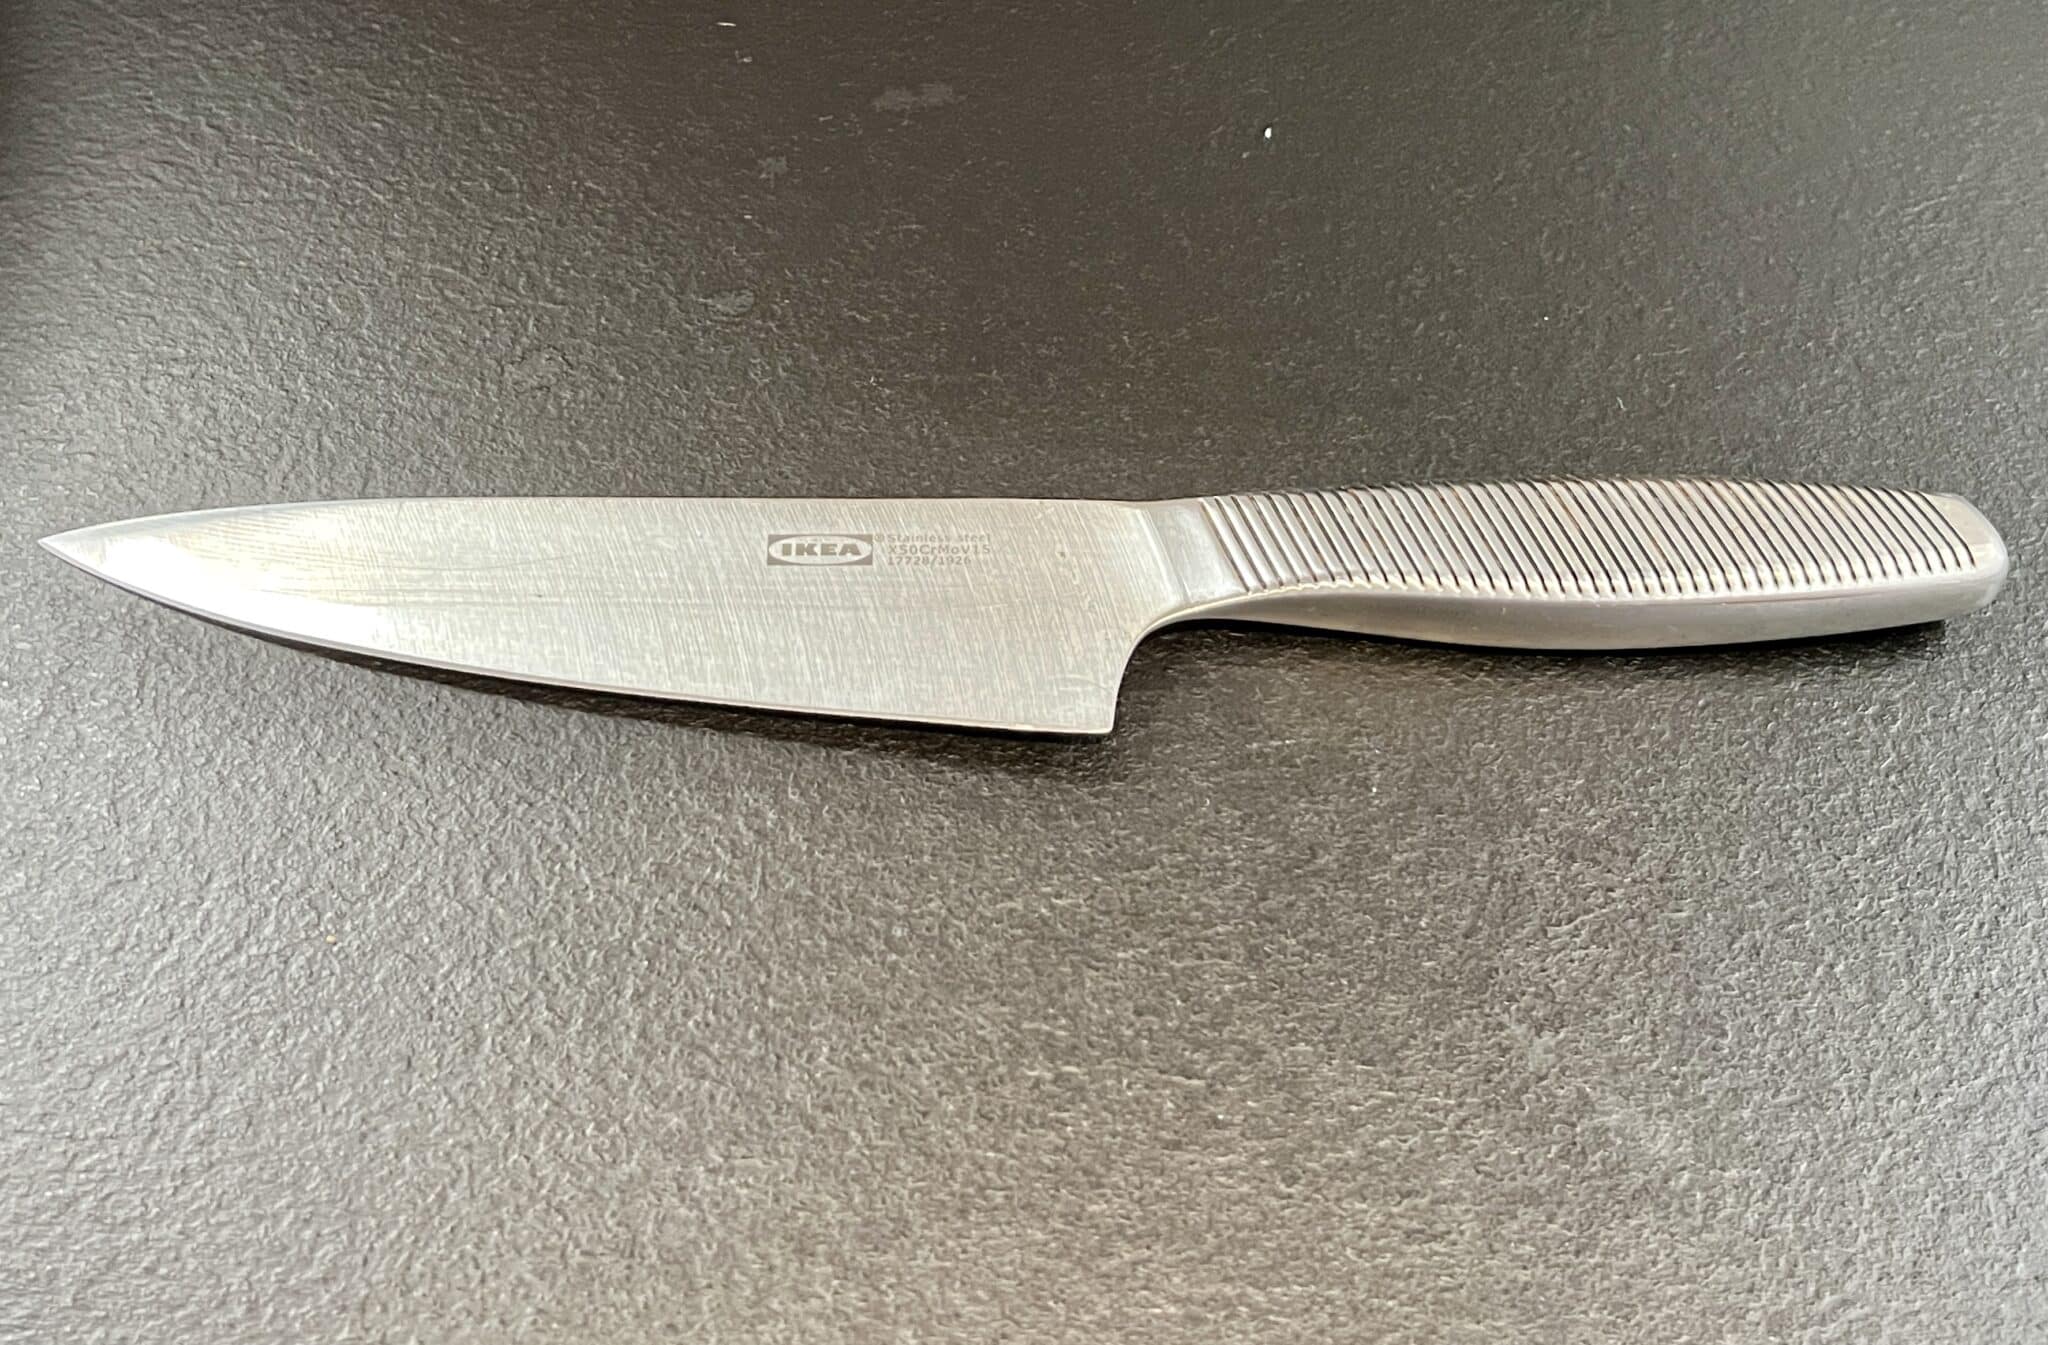 Are Ikea Knives Any Good?